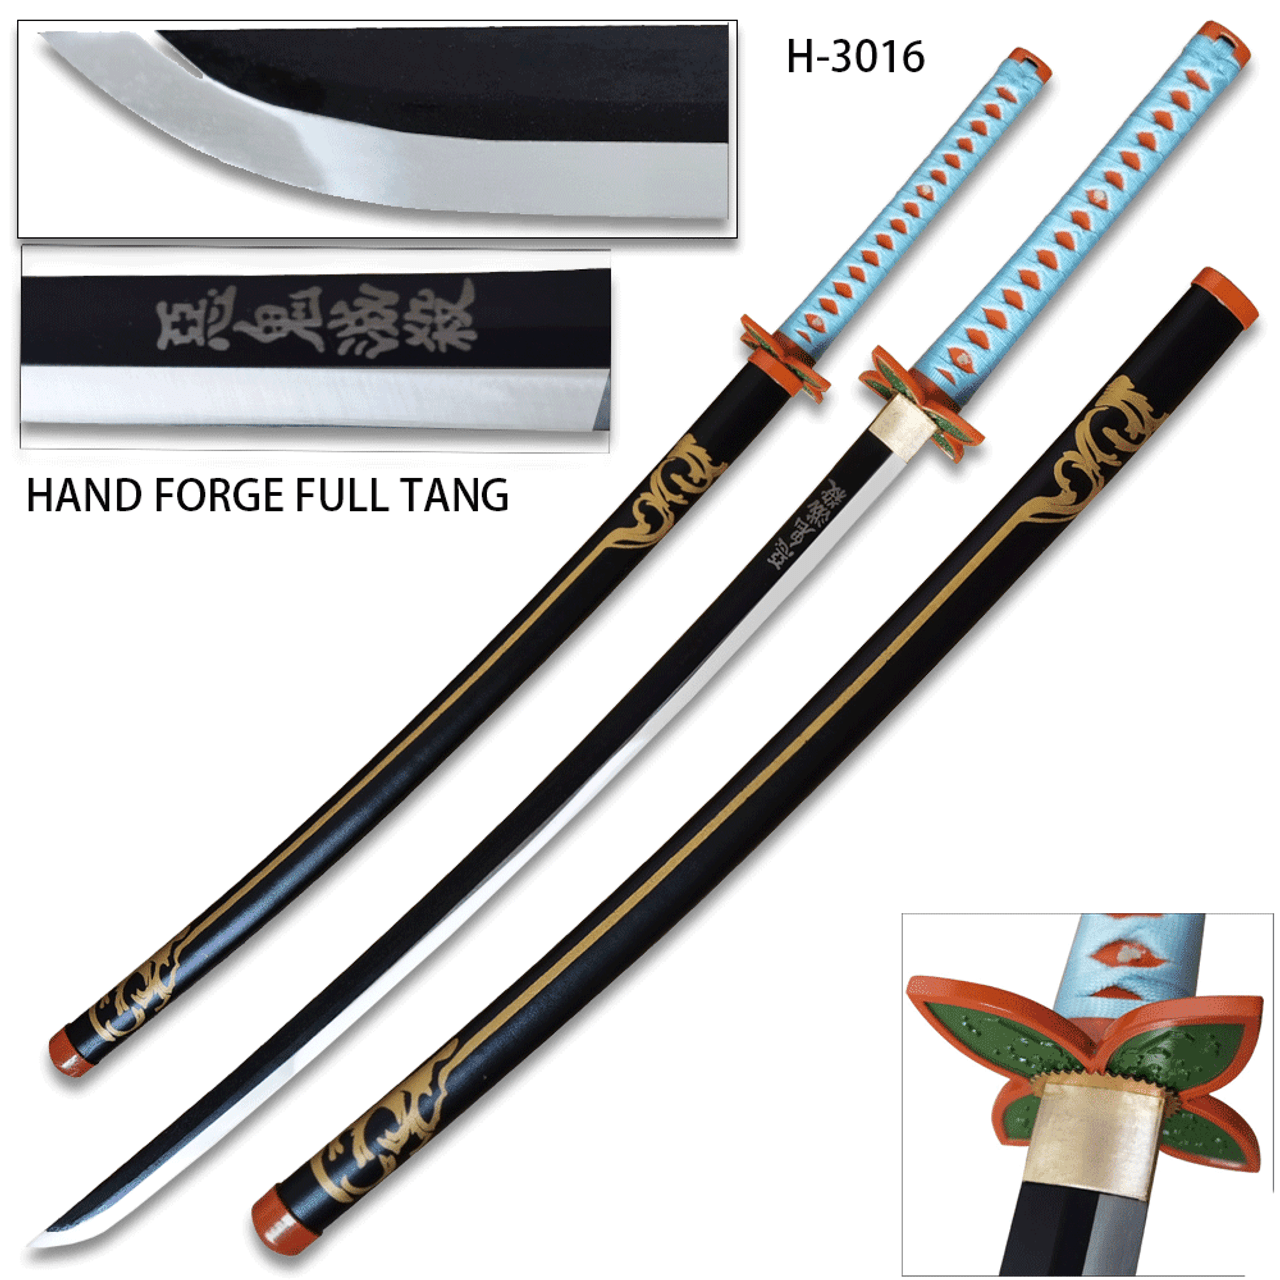 fantasy samurai swords